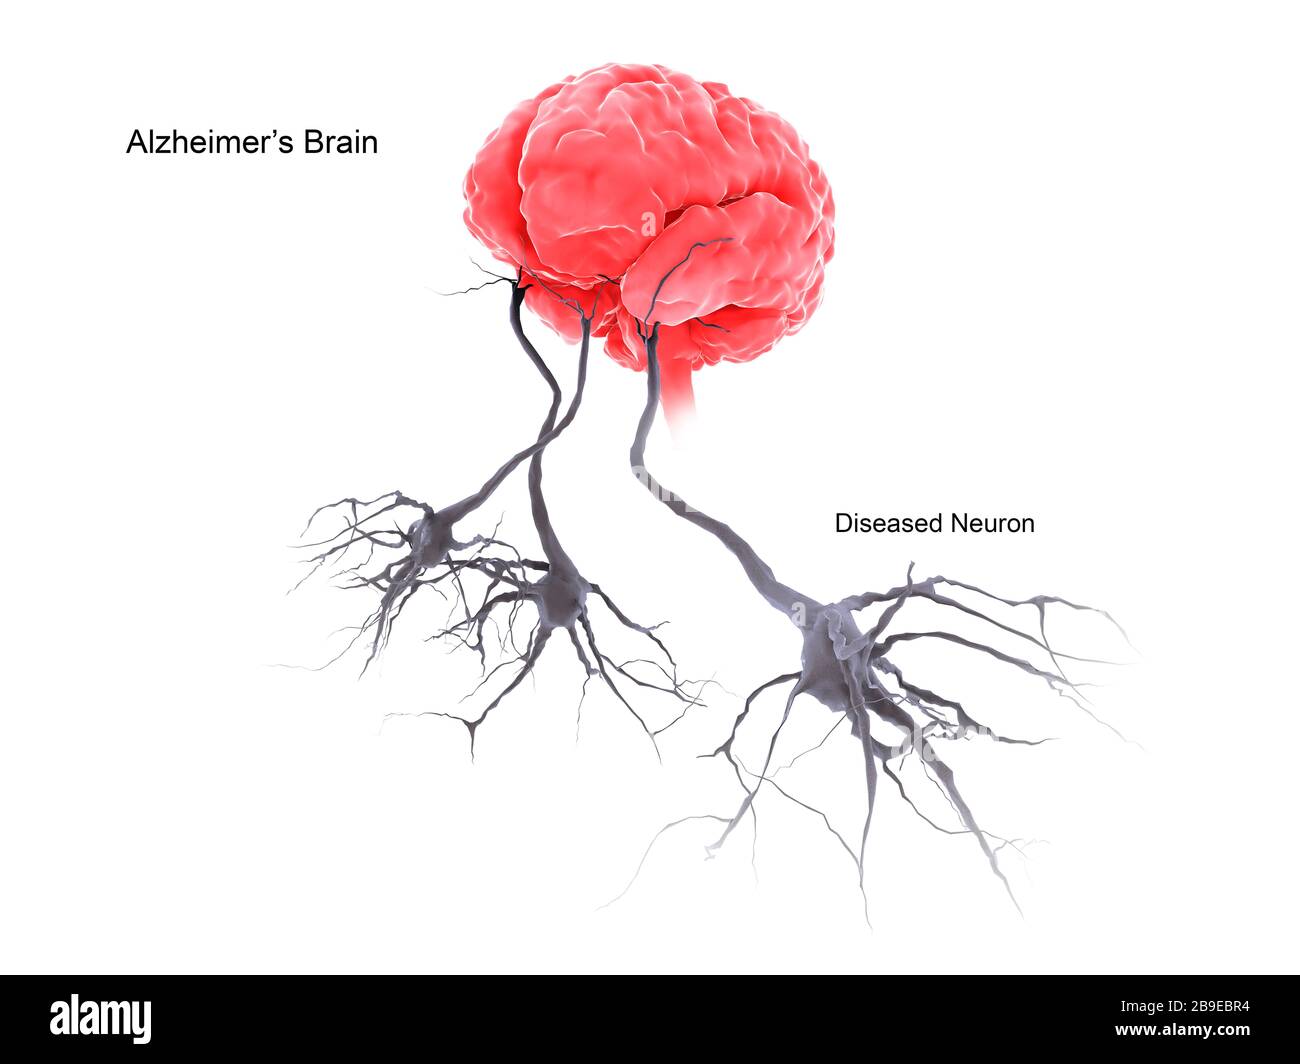 Ein Gehirn mit alzheimer-krankheit, das erkrankte Neuron zeigt. Stockfoto